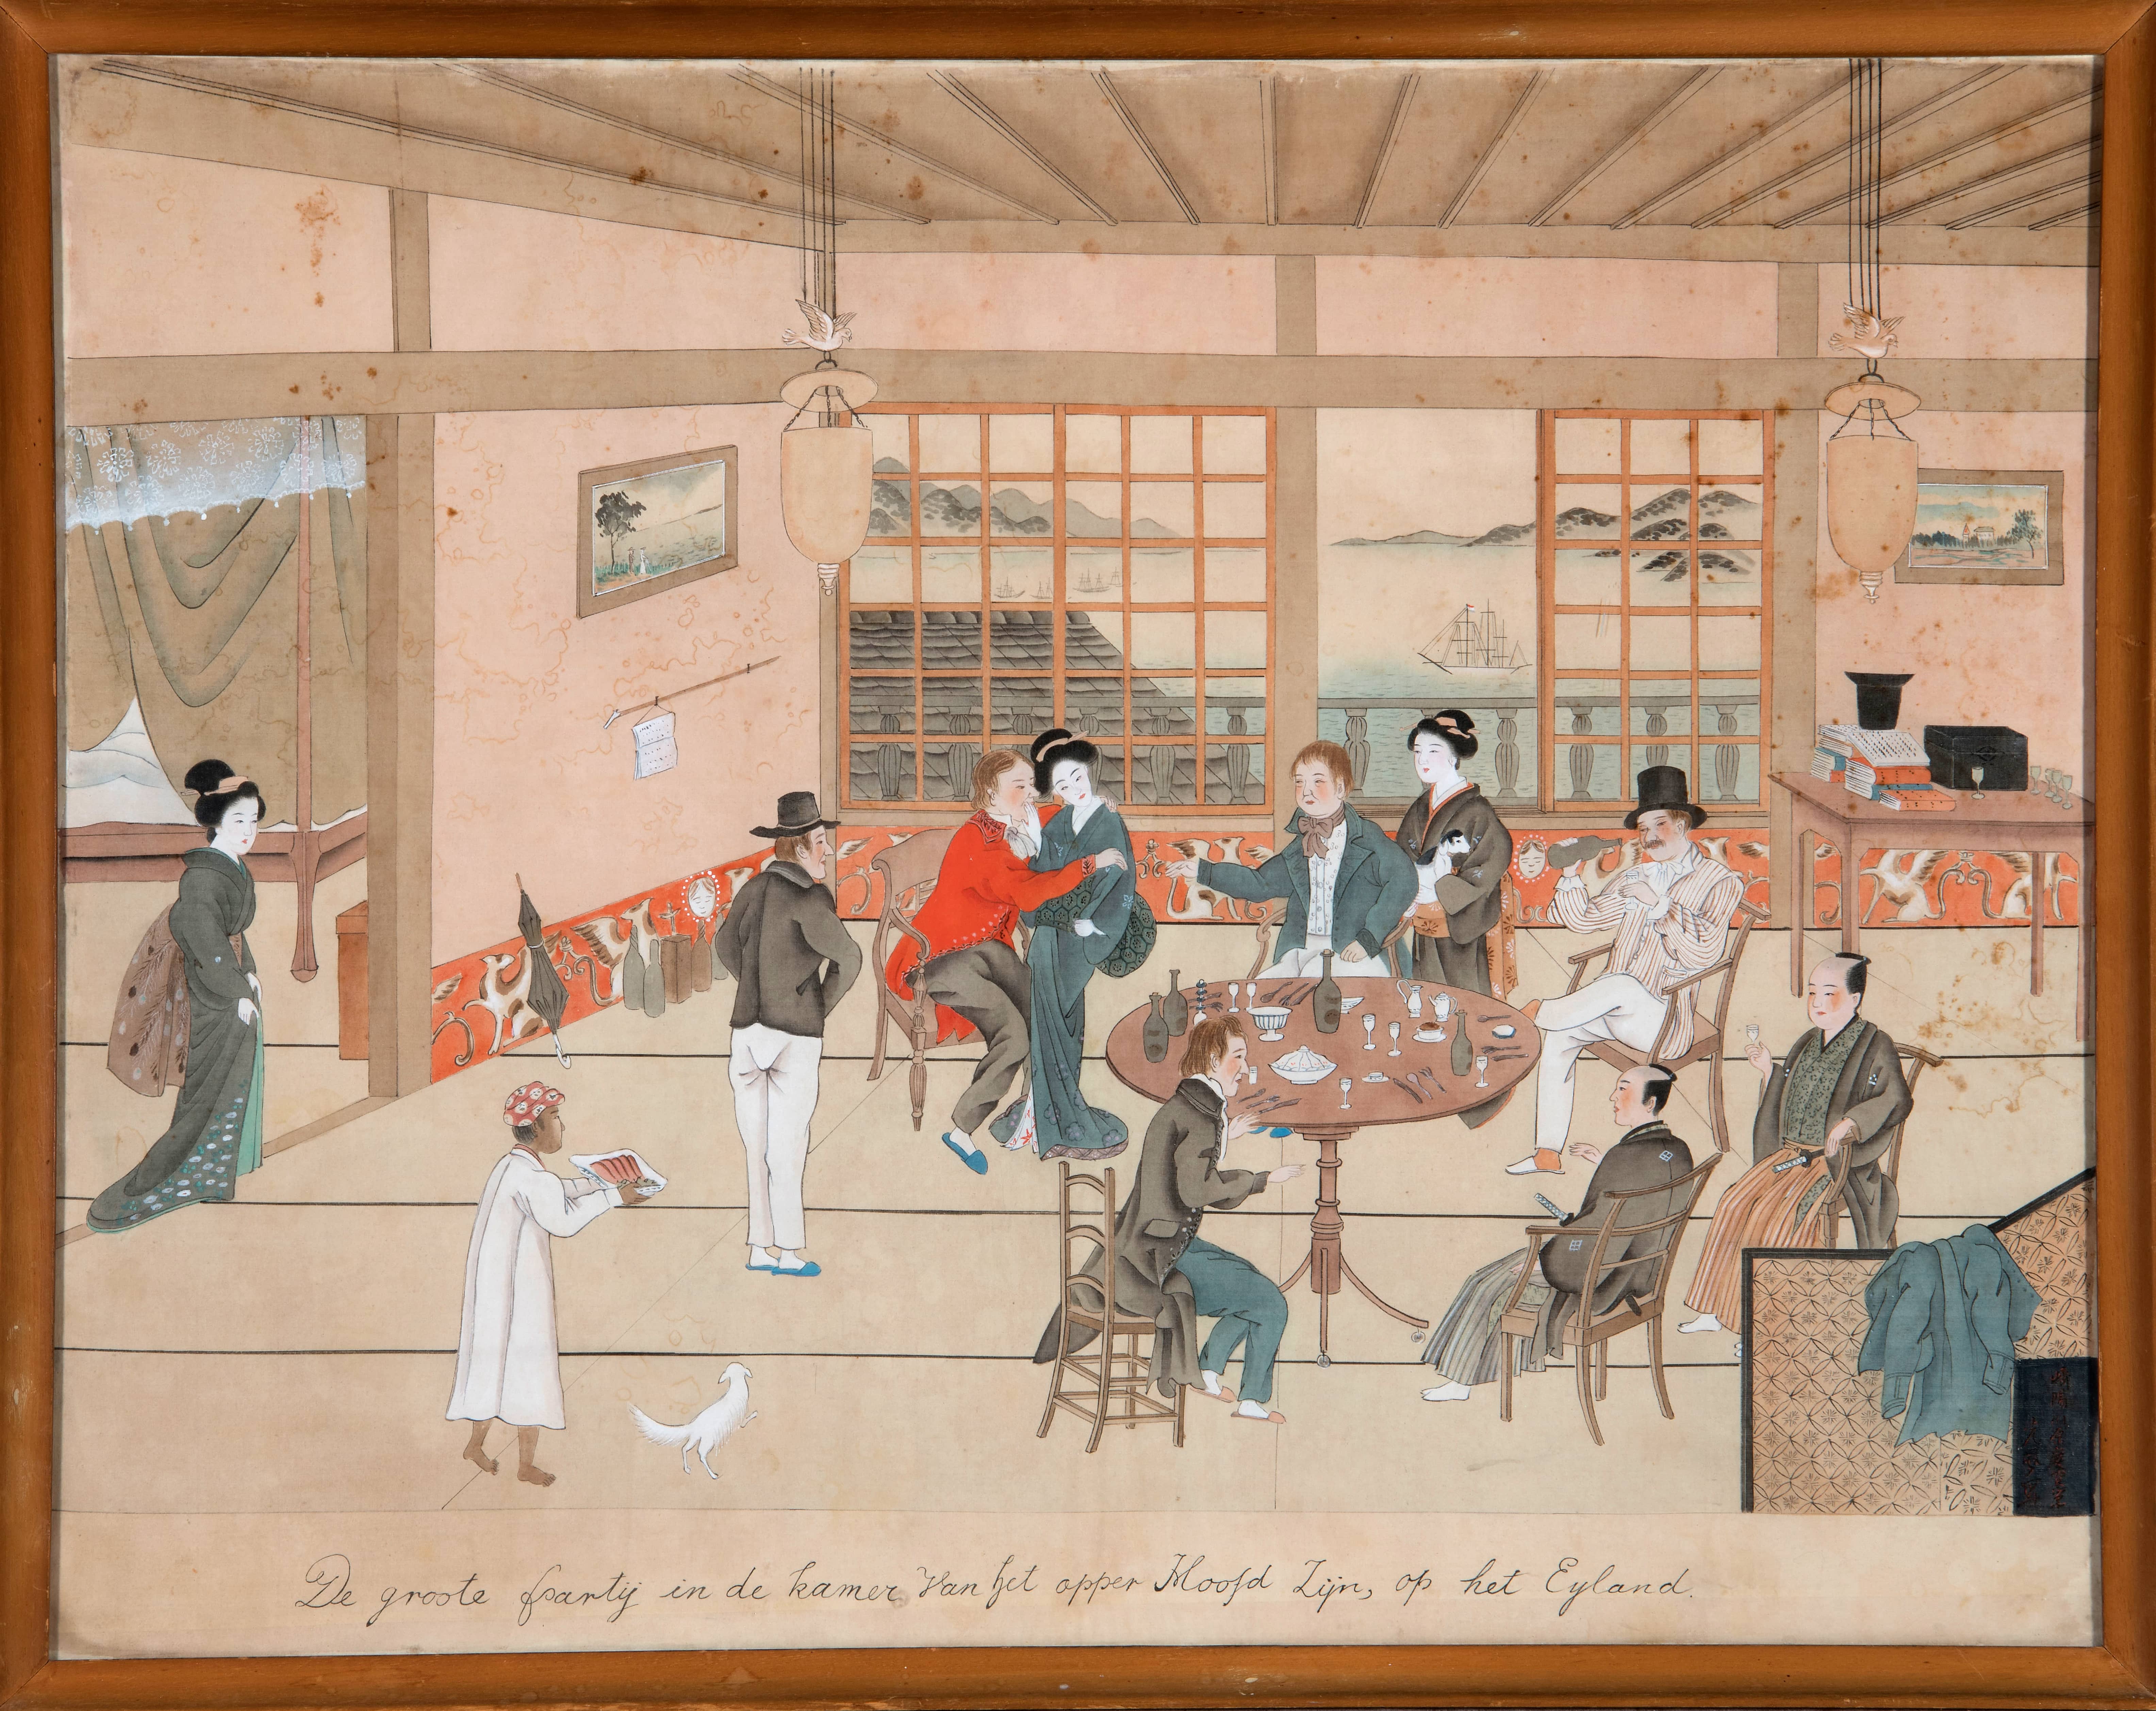 De Groote Partij in de kamer van het opper Hoofd Zijn, op het Eyland. Naar een origineel uit 1825 van Kawahara Keiga (1784-c.1860).